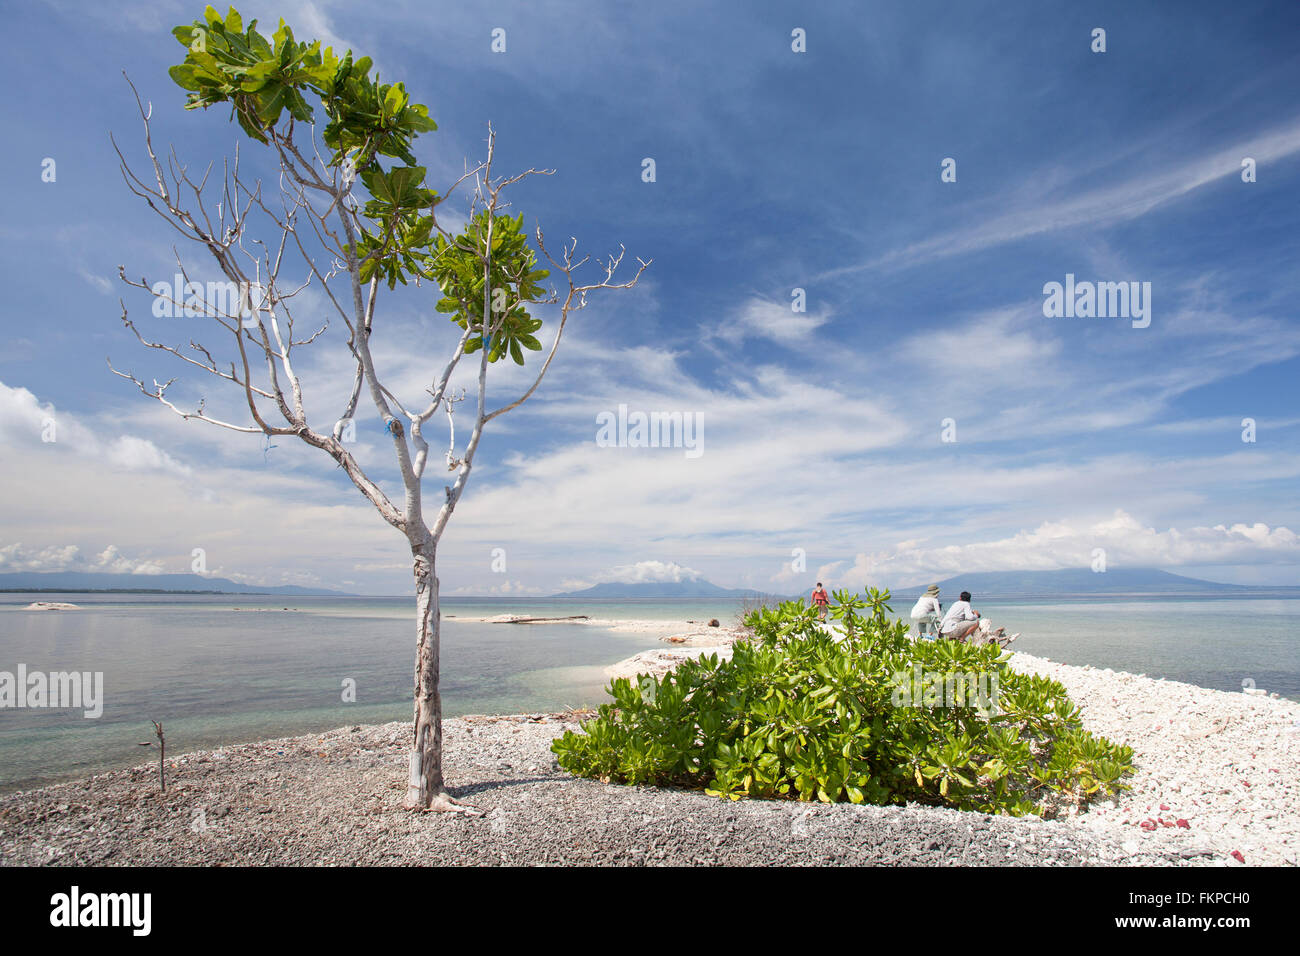 Breathaking Blick auf Fastofiri Island in den Molukken (Molukken) von Ost-Indonesien. Stockfoto